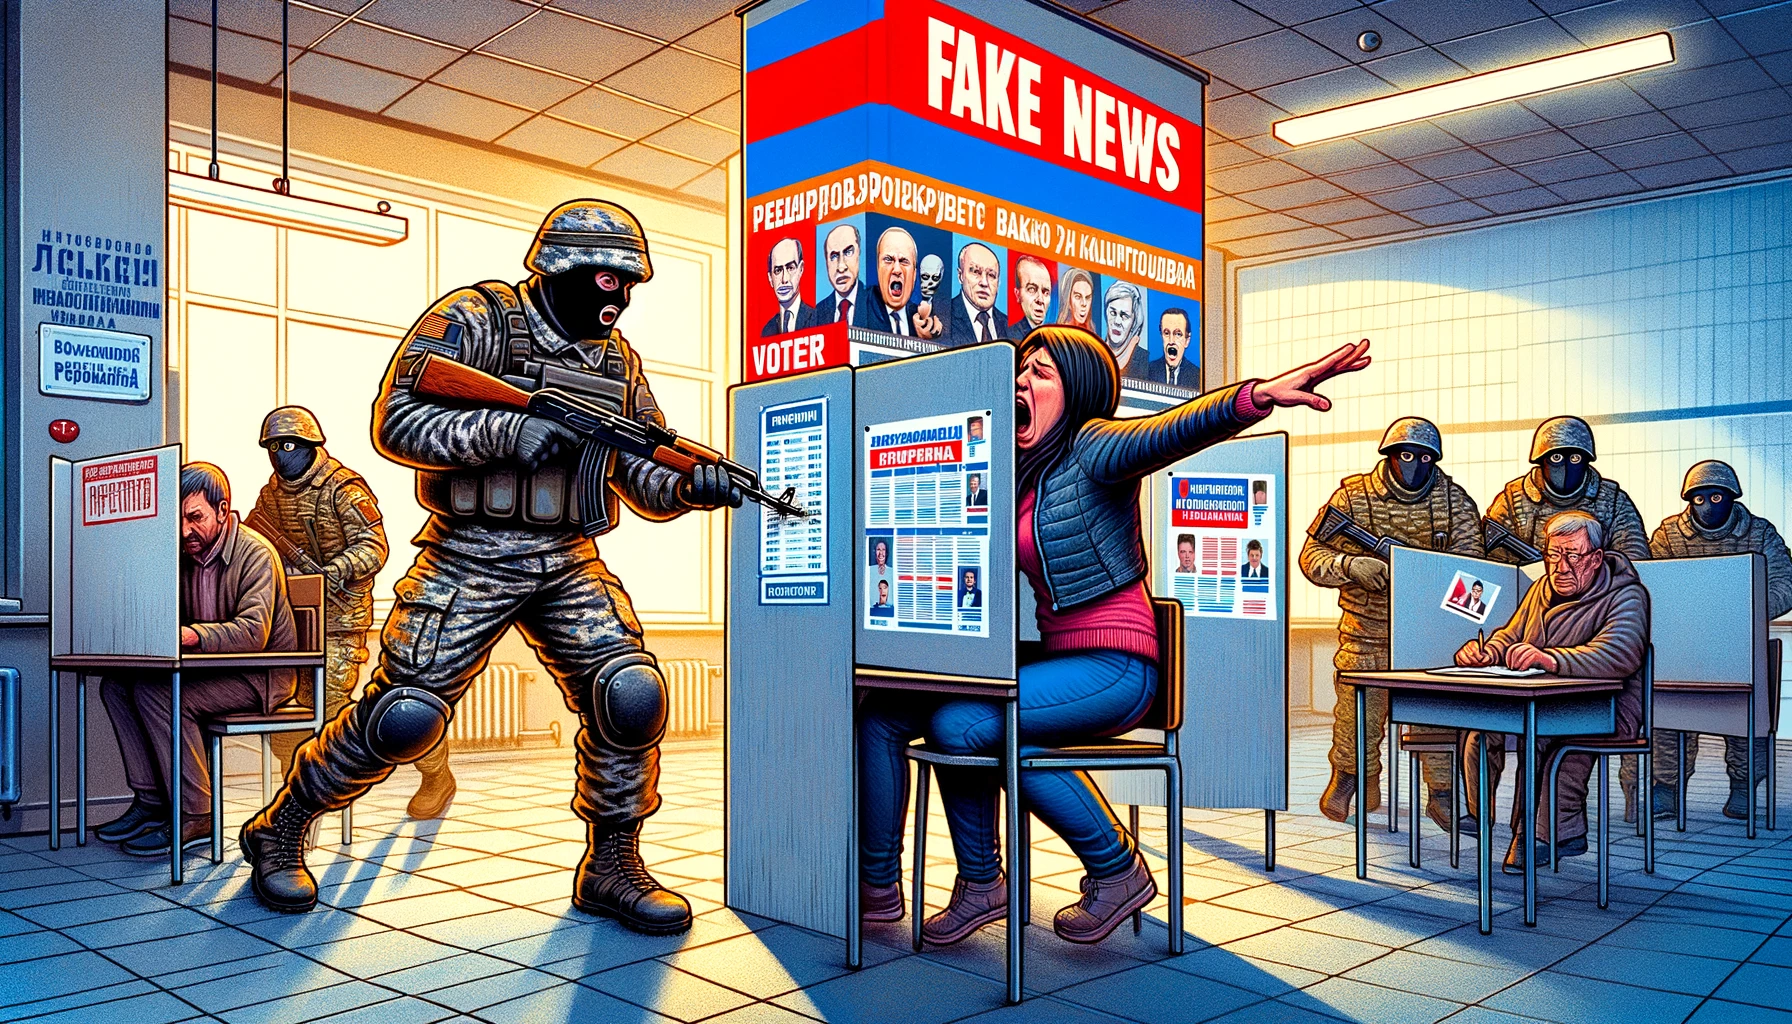 Le fake news dei grandi media smascherate dal curriculum di Putin